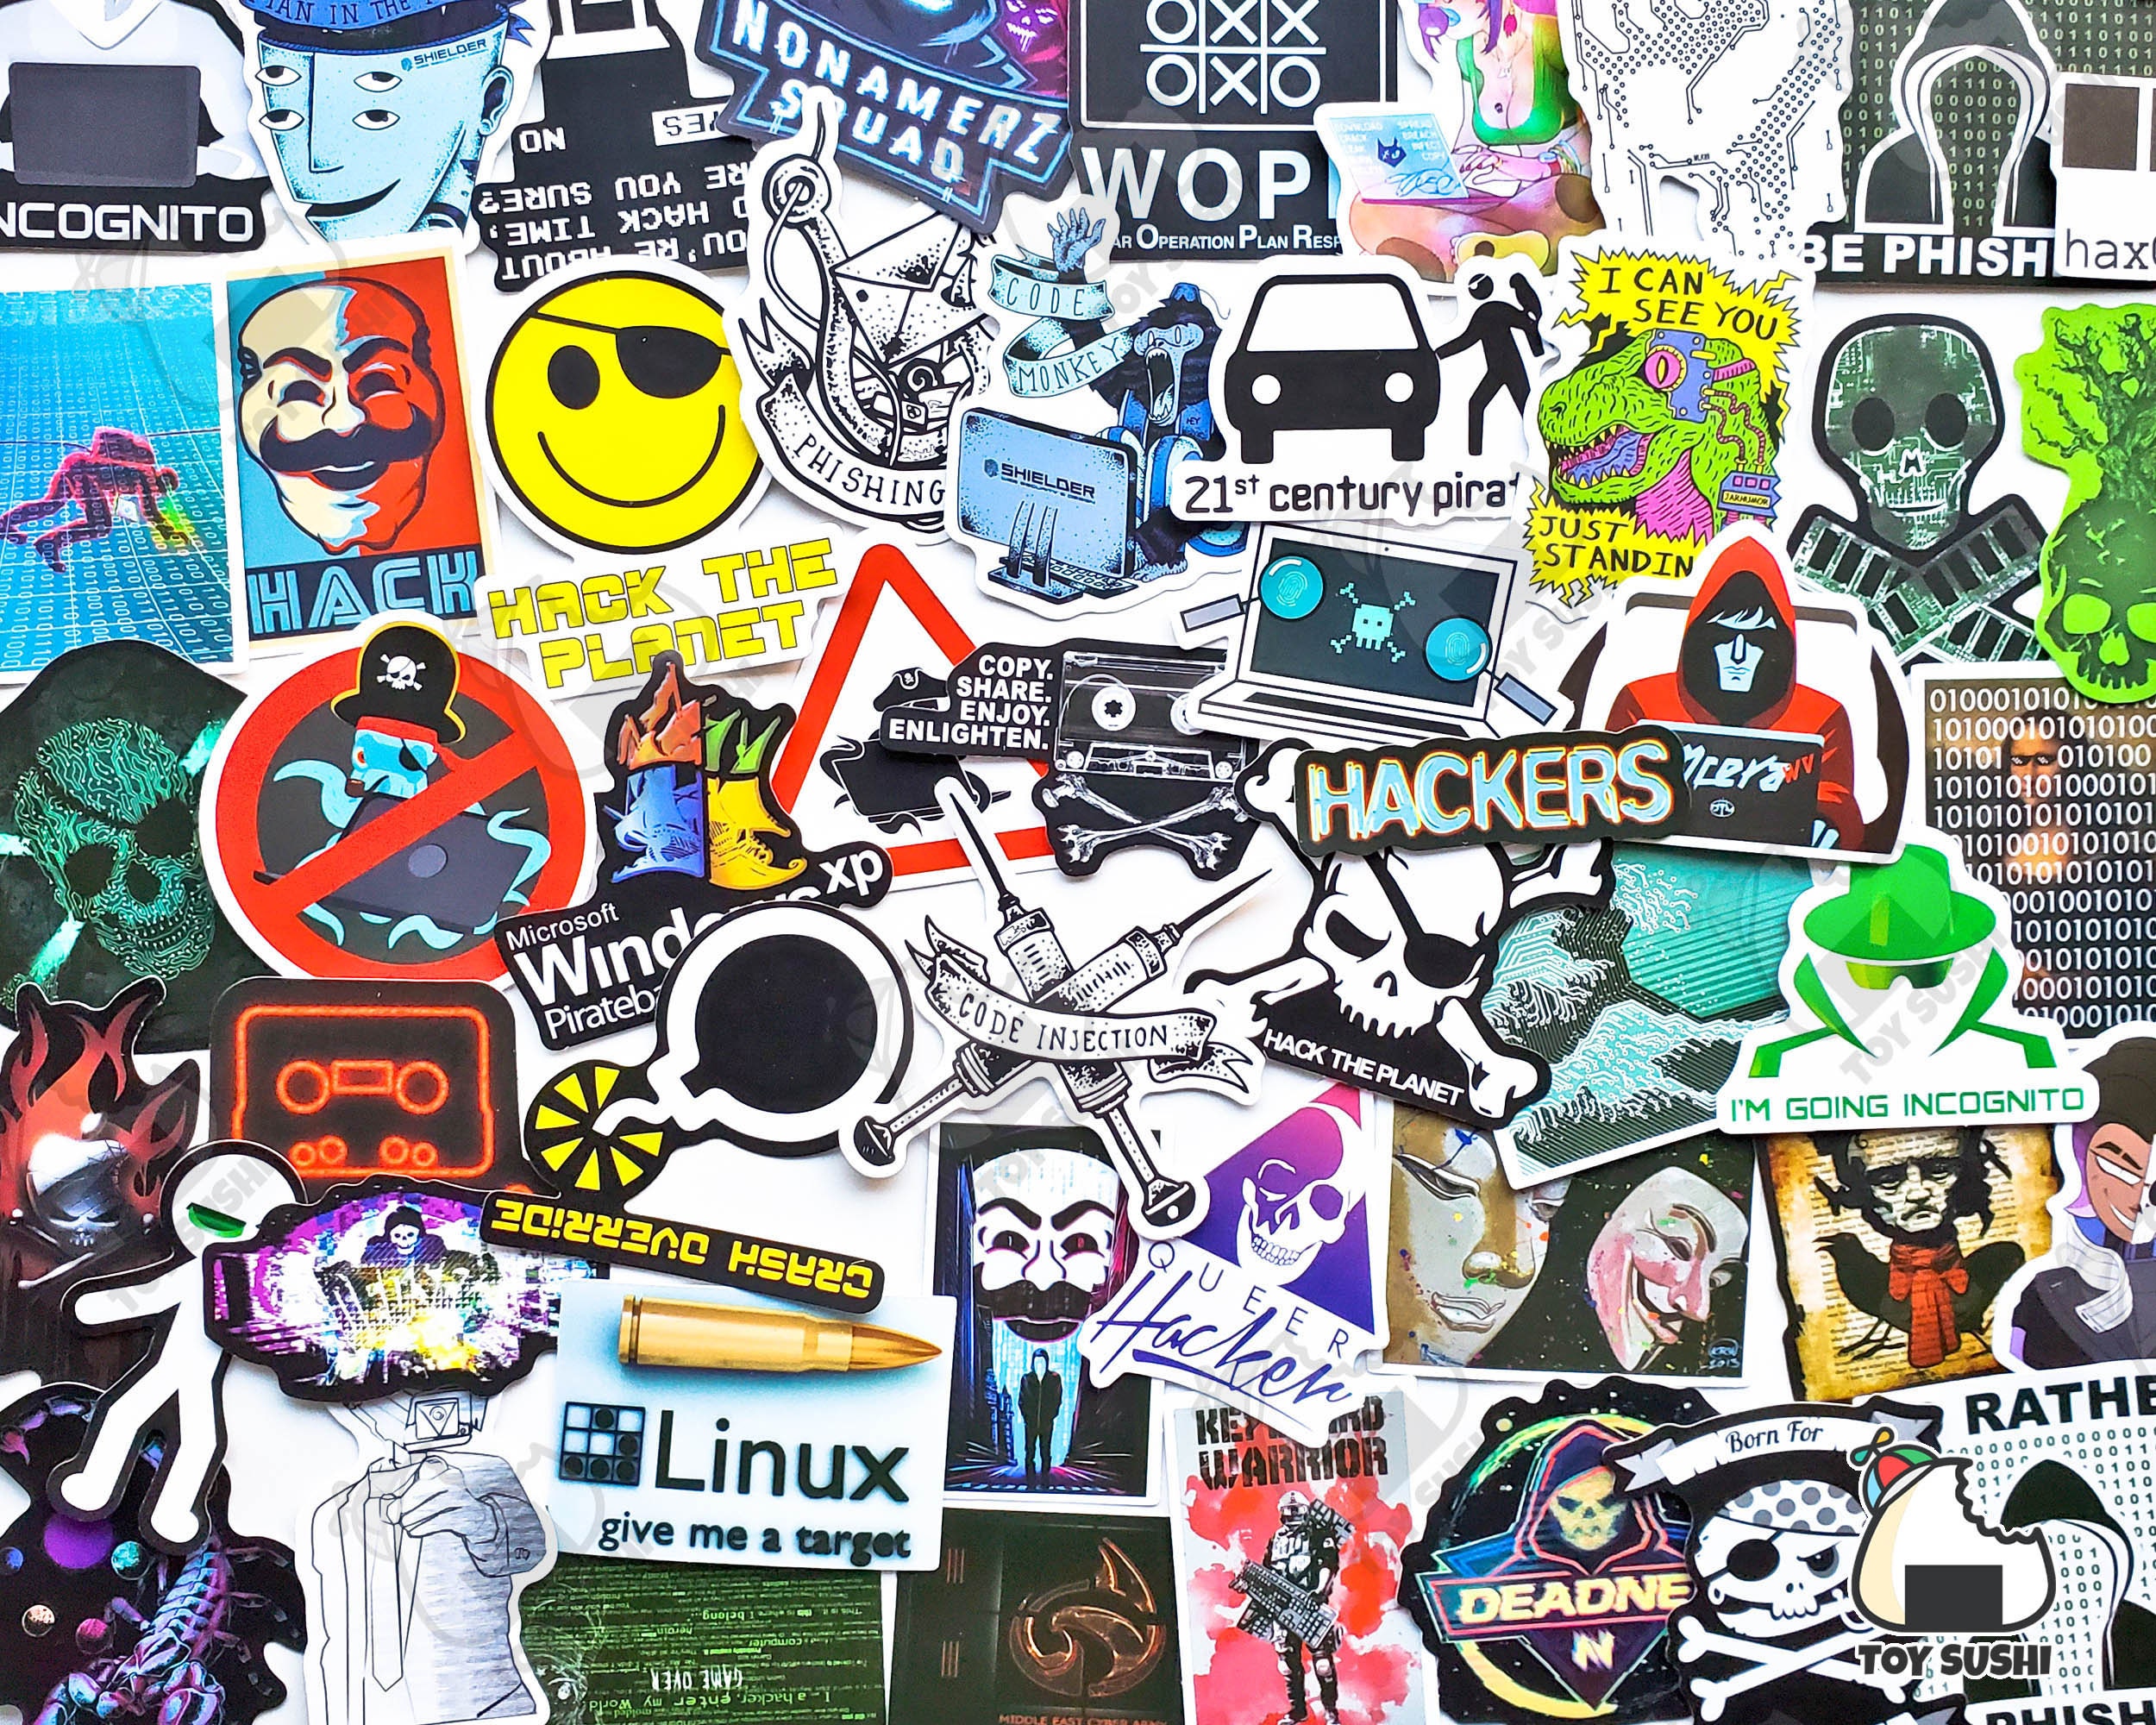 Programmer and hacker geek - Programmer - Sticker